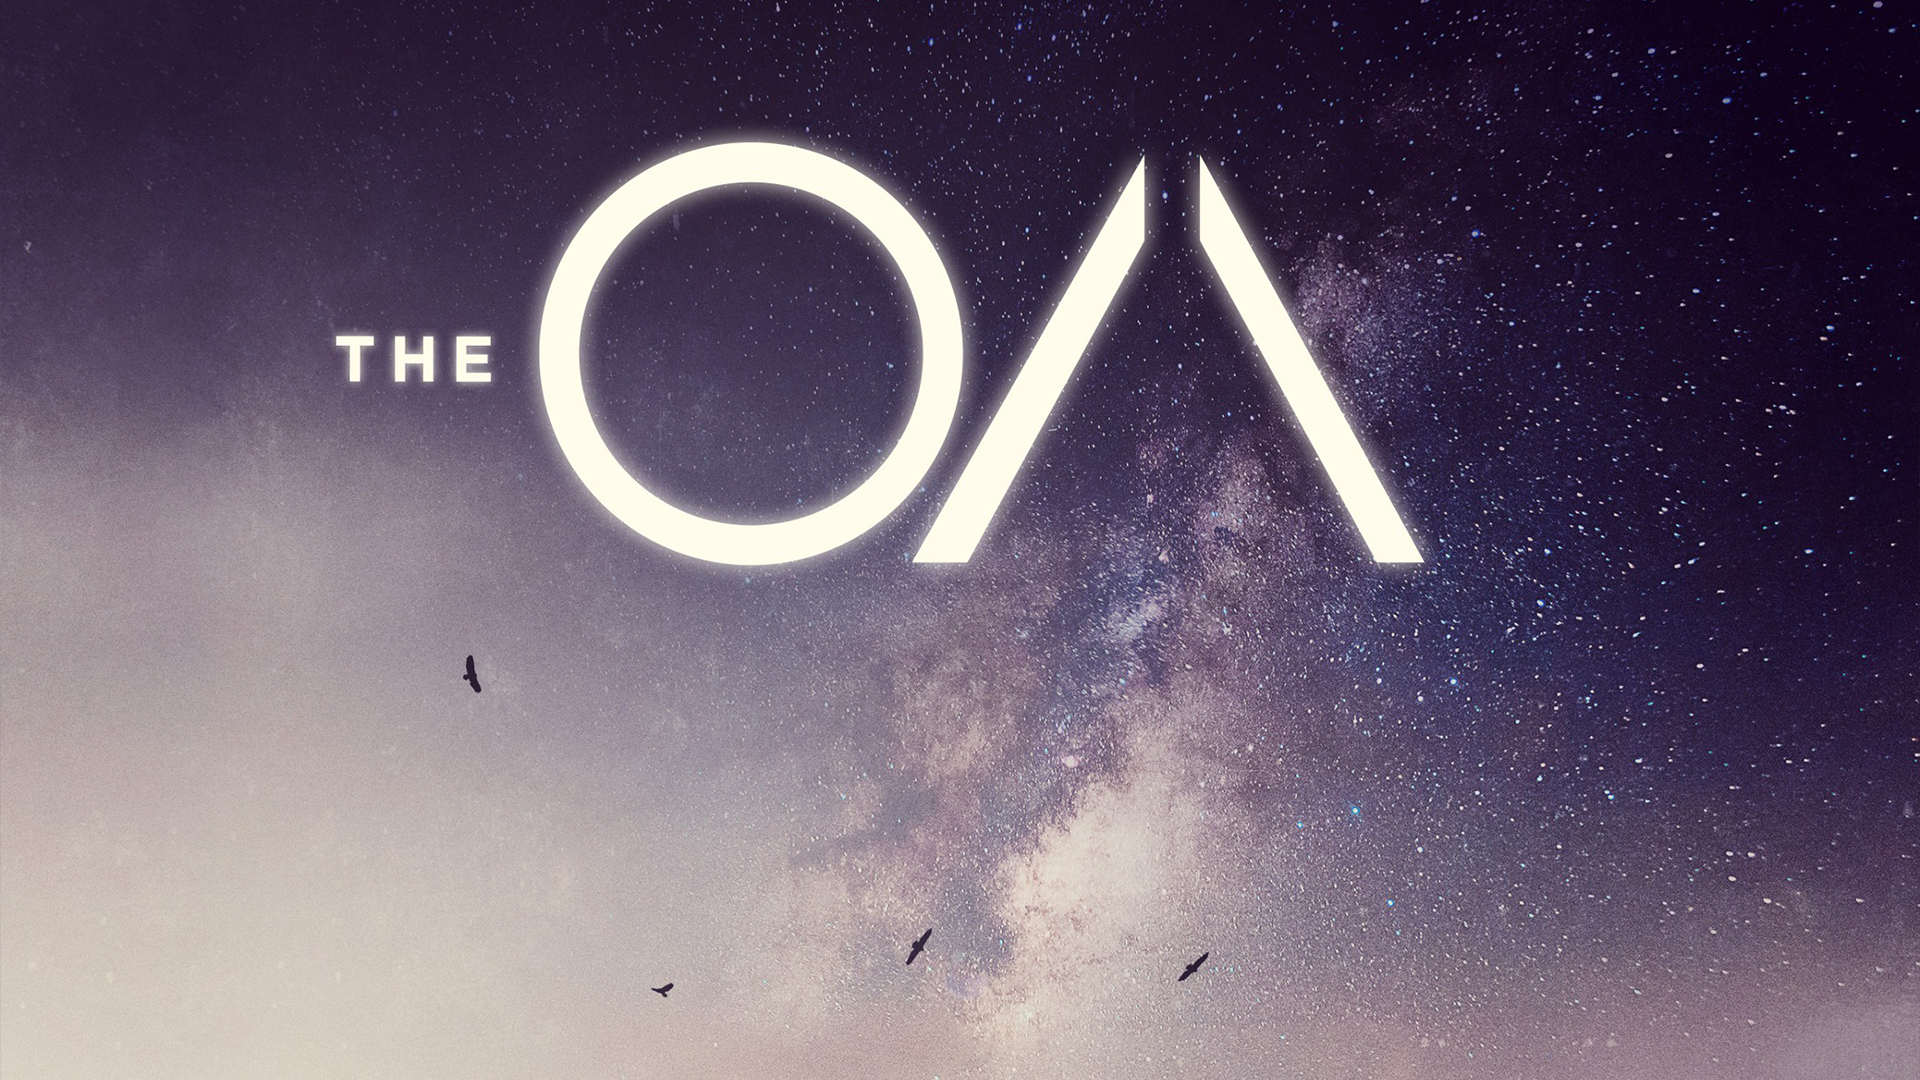 The OA, Tv series, Netflix Wallpaper